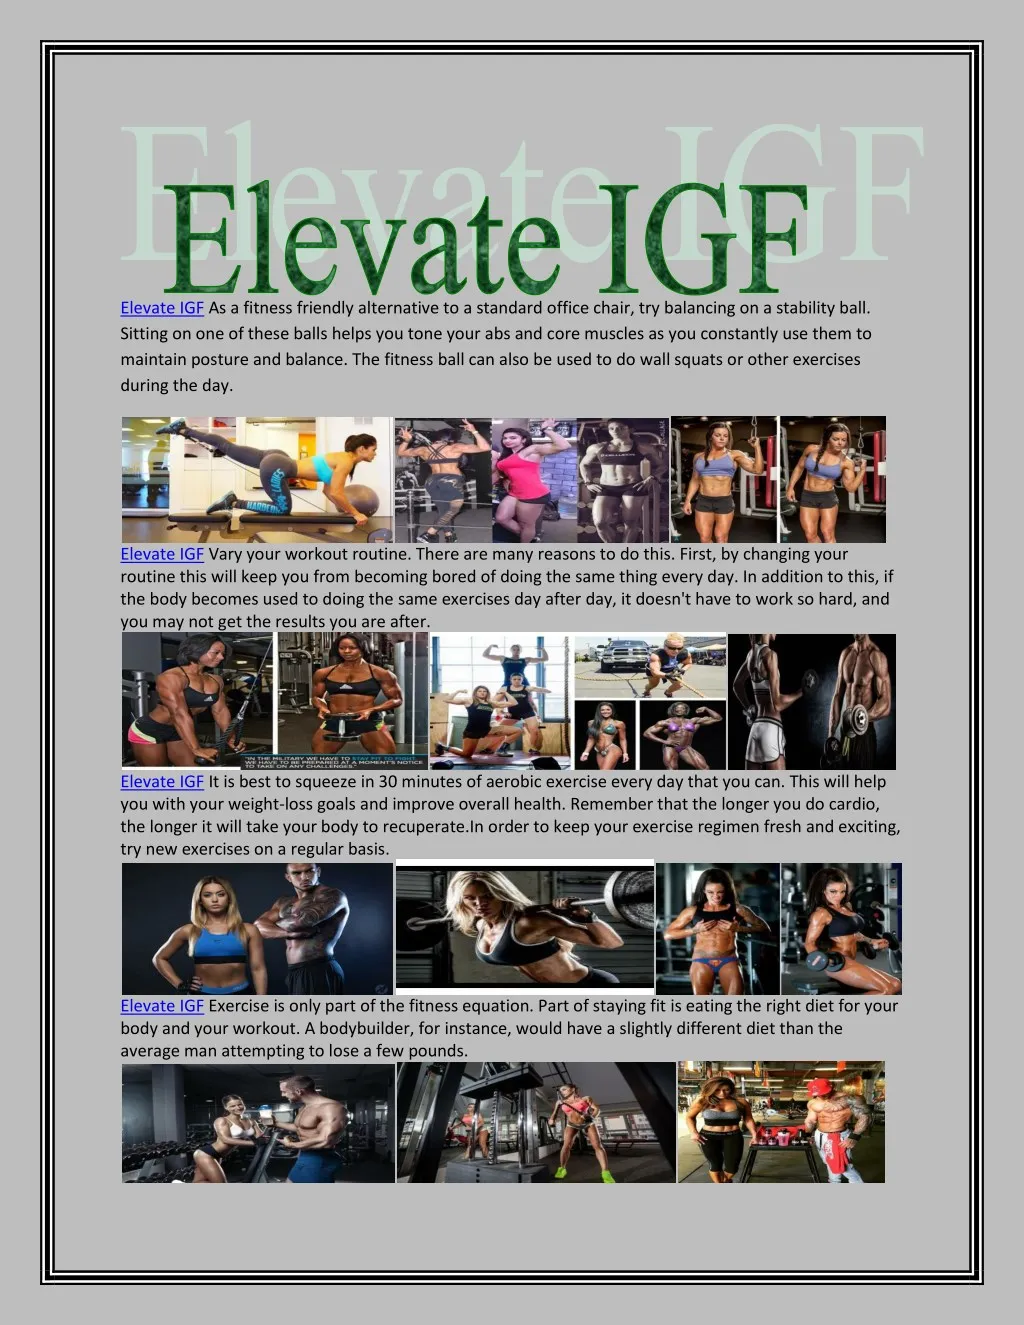 elevate igf as a fitness friendly alternative